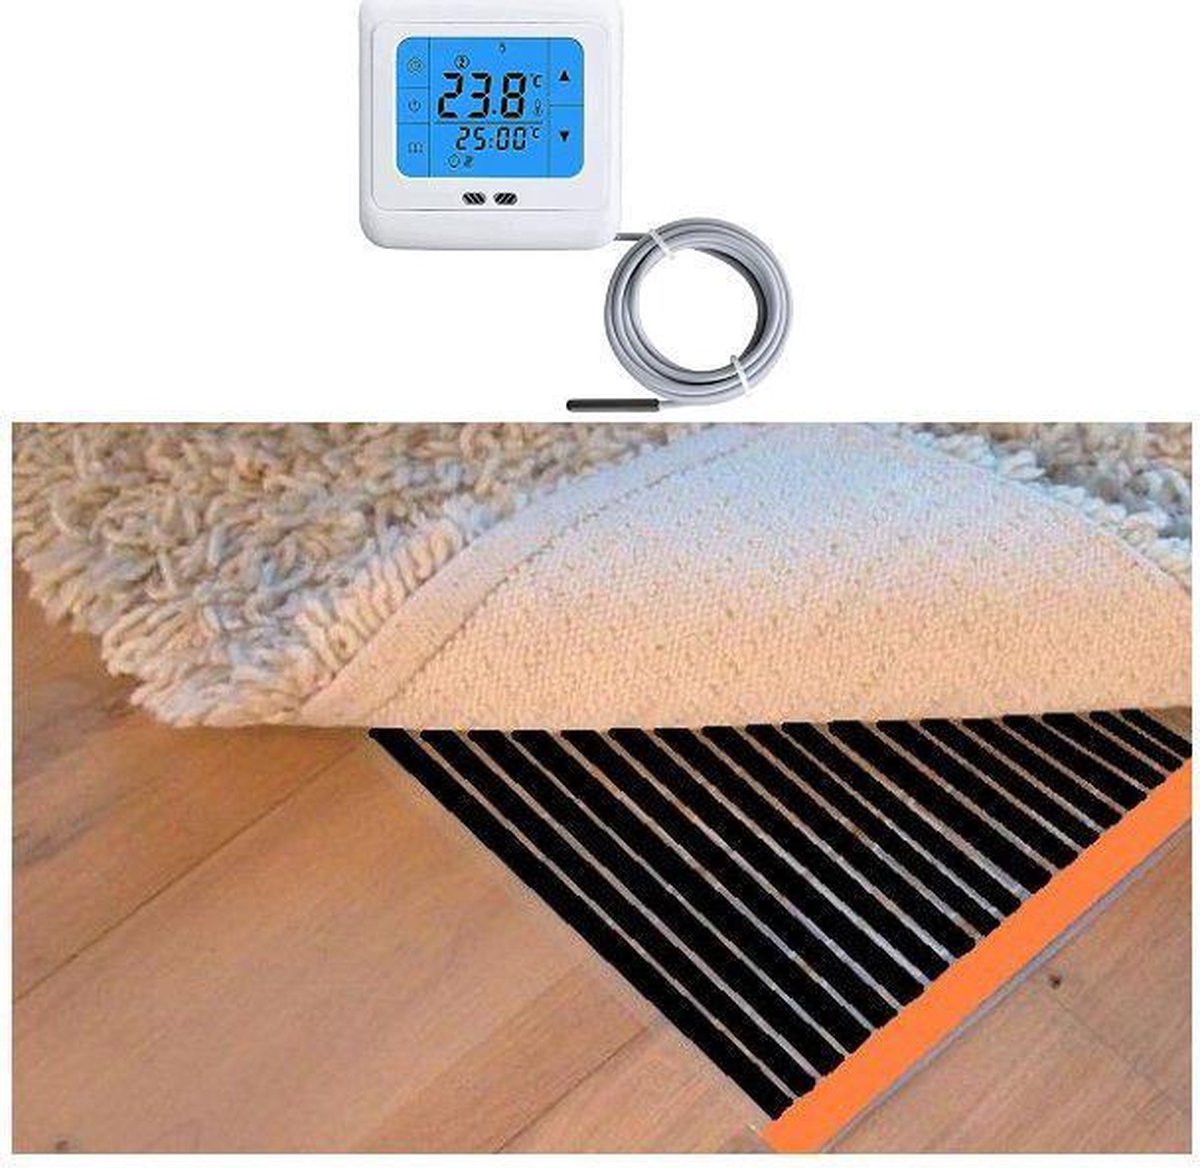 Woonkamer verwarmingsfolie infrarood folie voor vloerbedekking, tapijten vloerkleden elektrisch met TH 89 thermostaat 175 cm x 950 cm 2660 Watt